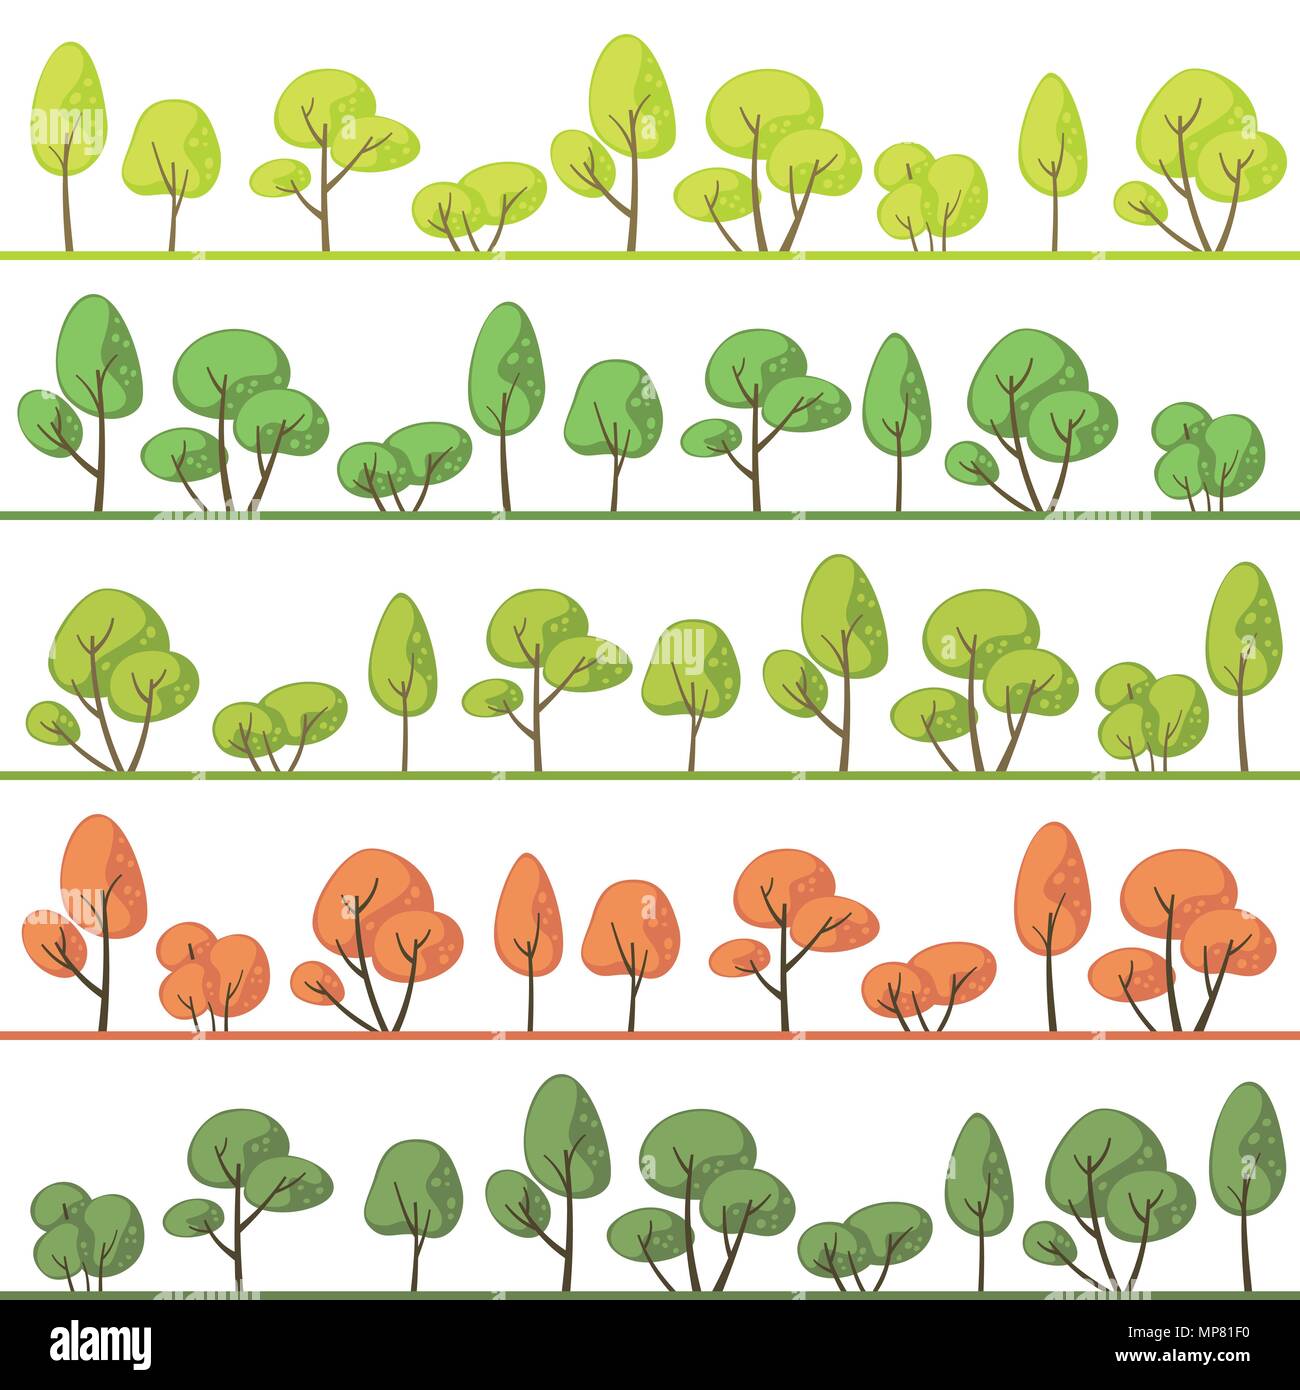 Landschaften mit abstrakten Bäumen in verschiedenen Farben Stock Vektor